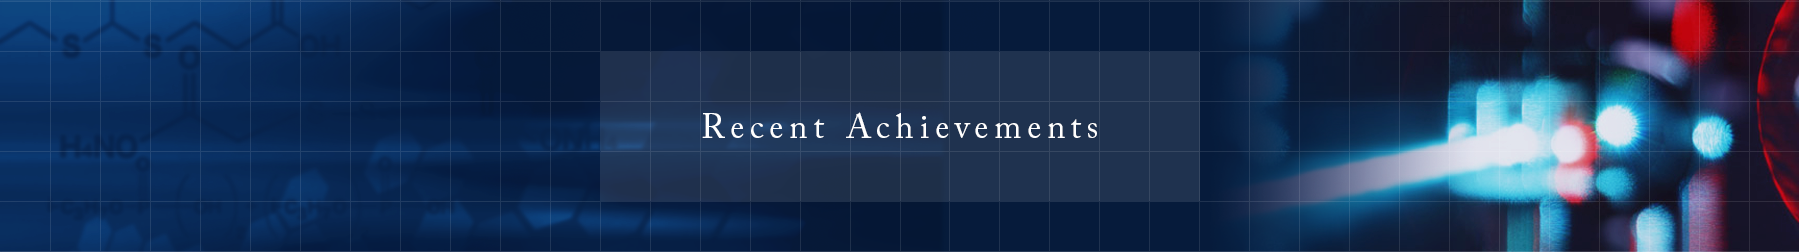 Recent Achievements